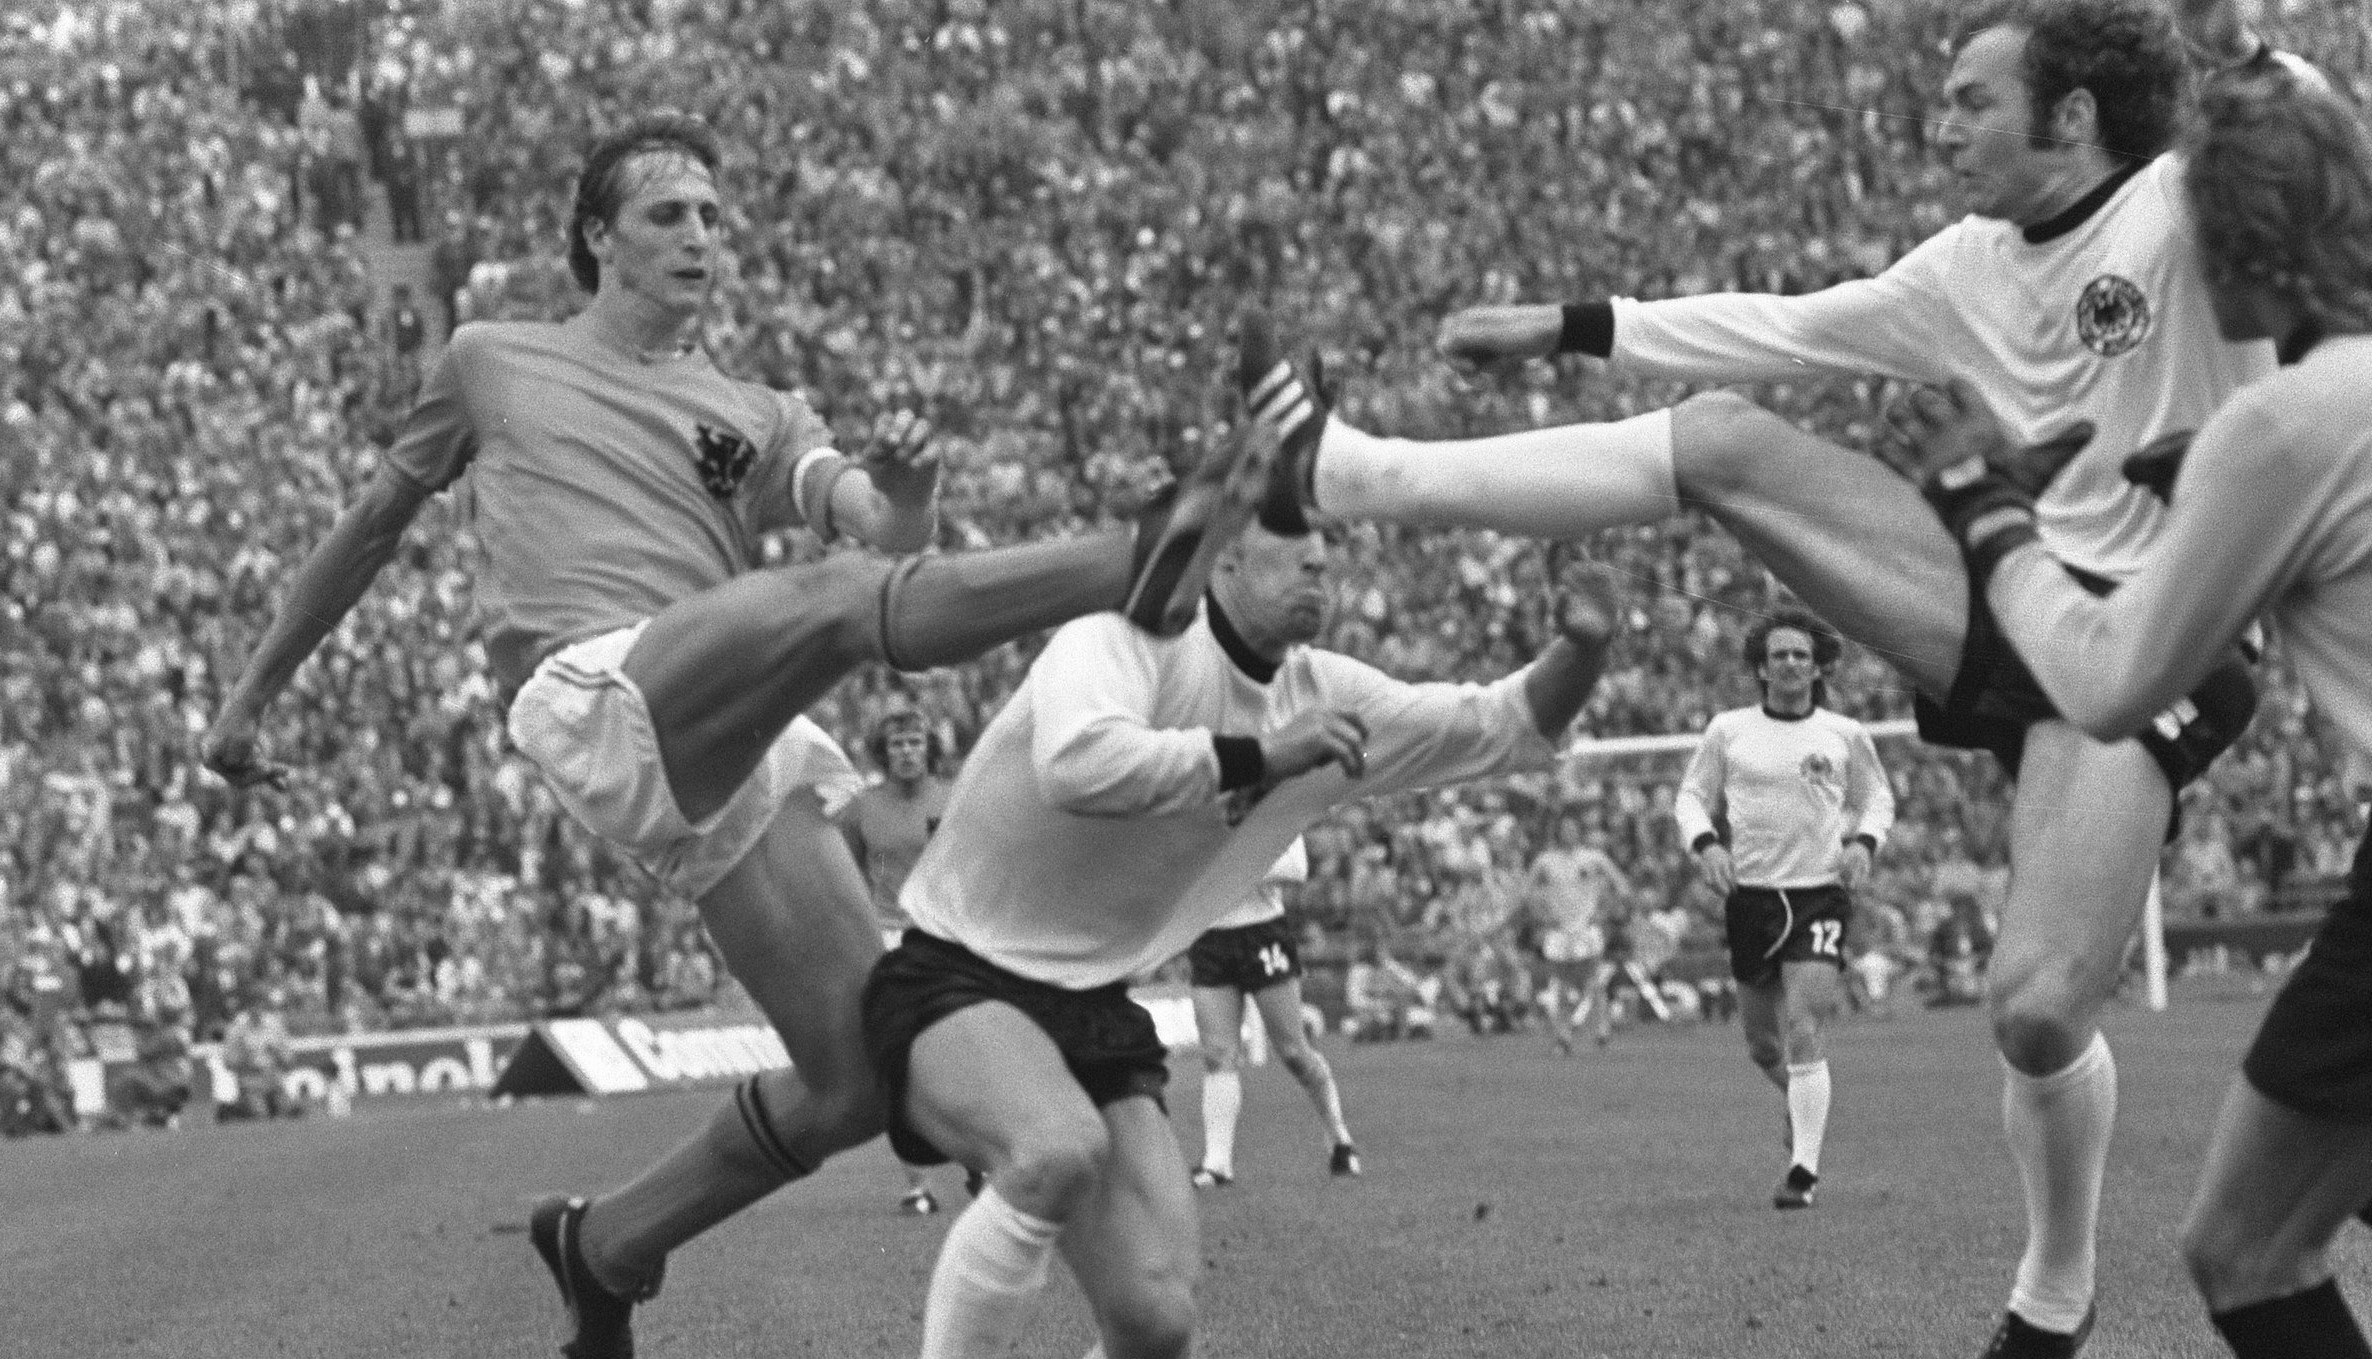 Finale de la Coupe du monde de la FIFA 1974, Pays-Bas 1-2 RFA